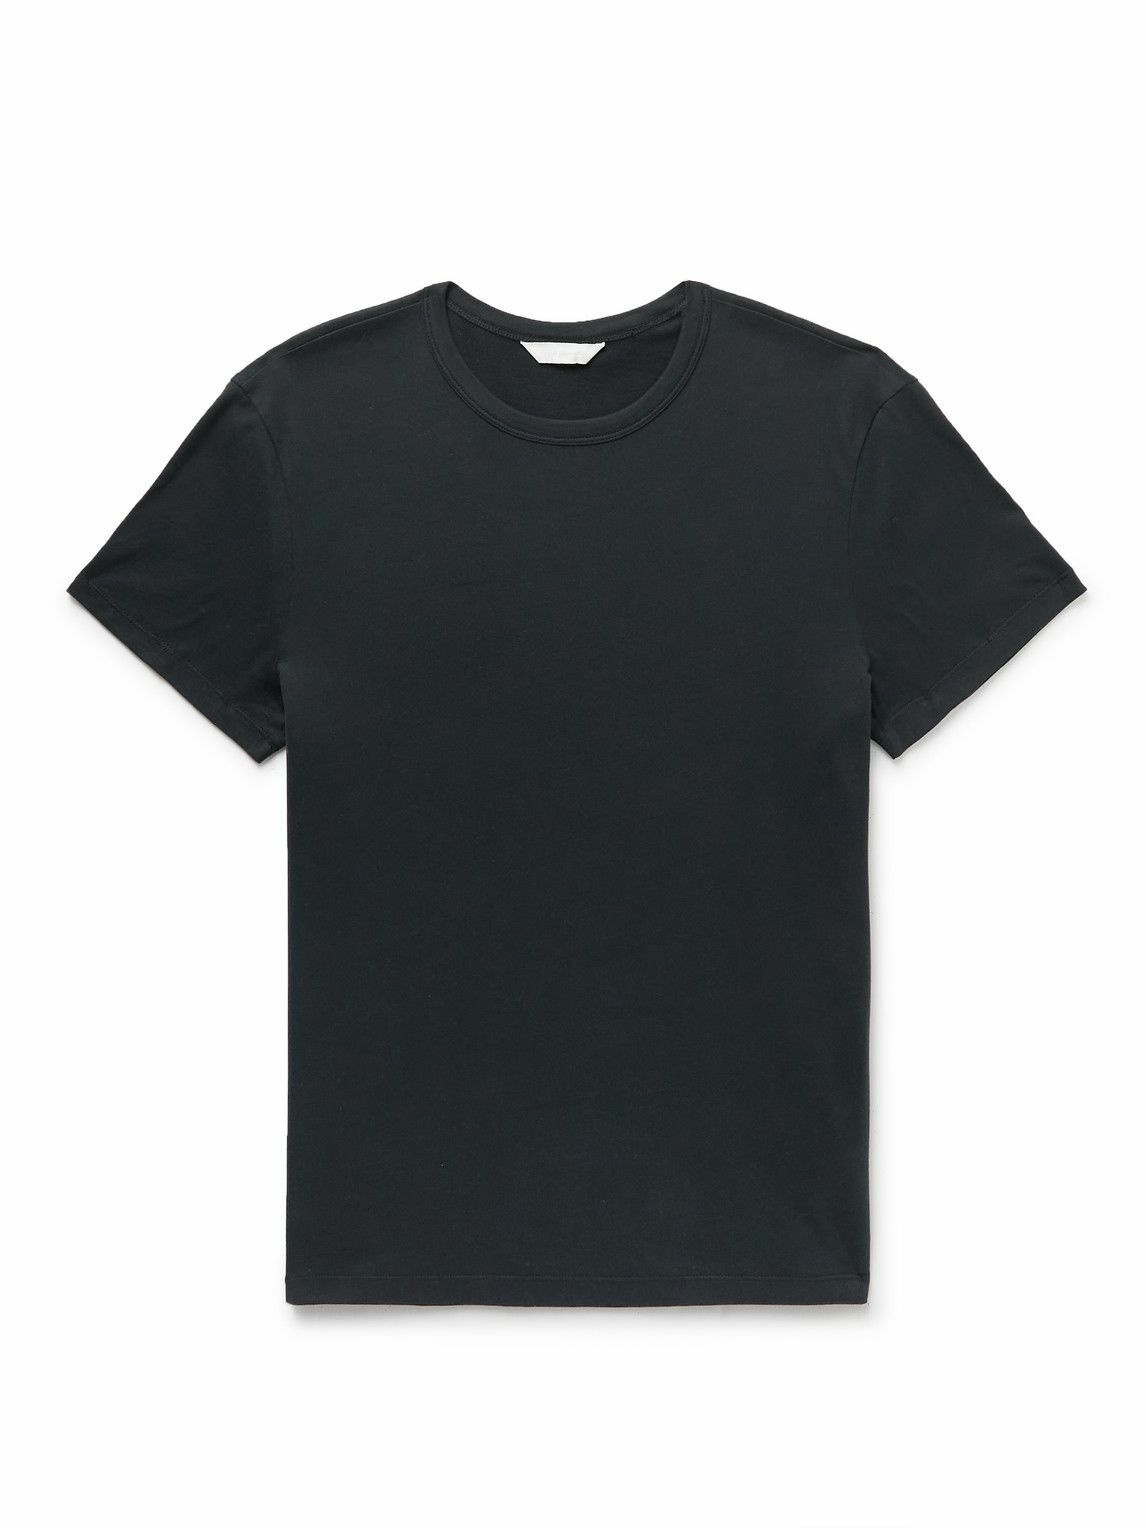 Club Monaco - Pima Cotton-Jersey T-Shirt - Black Club Monaco